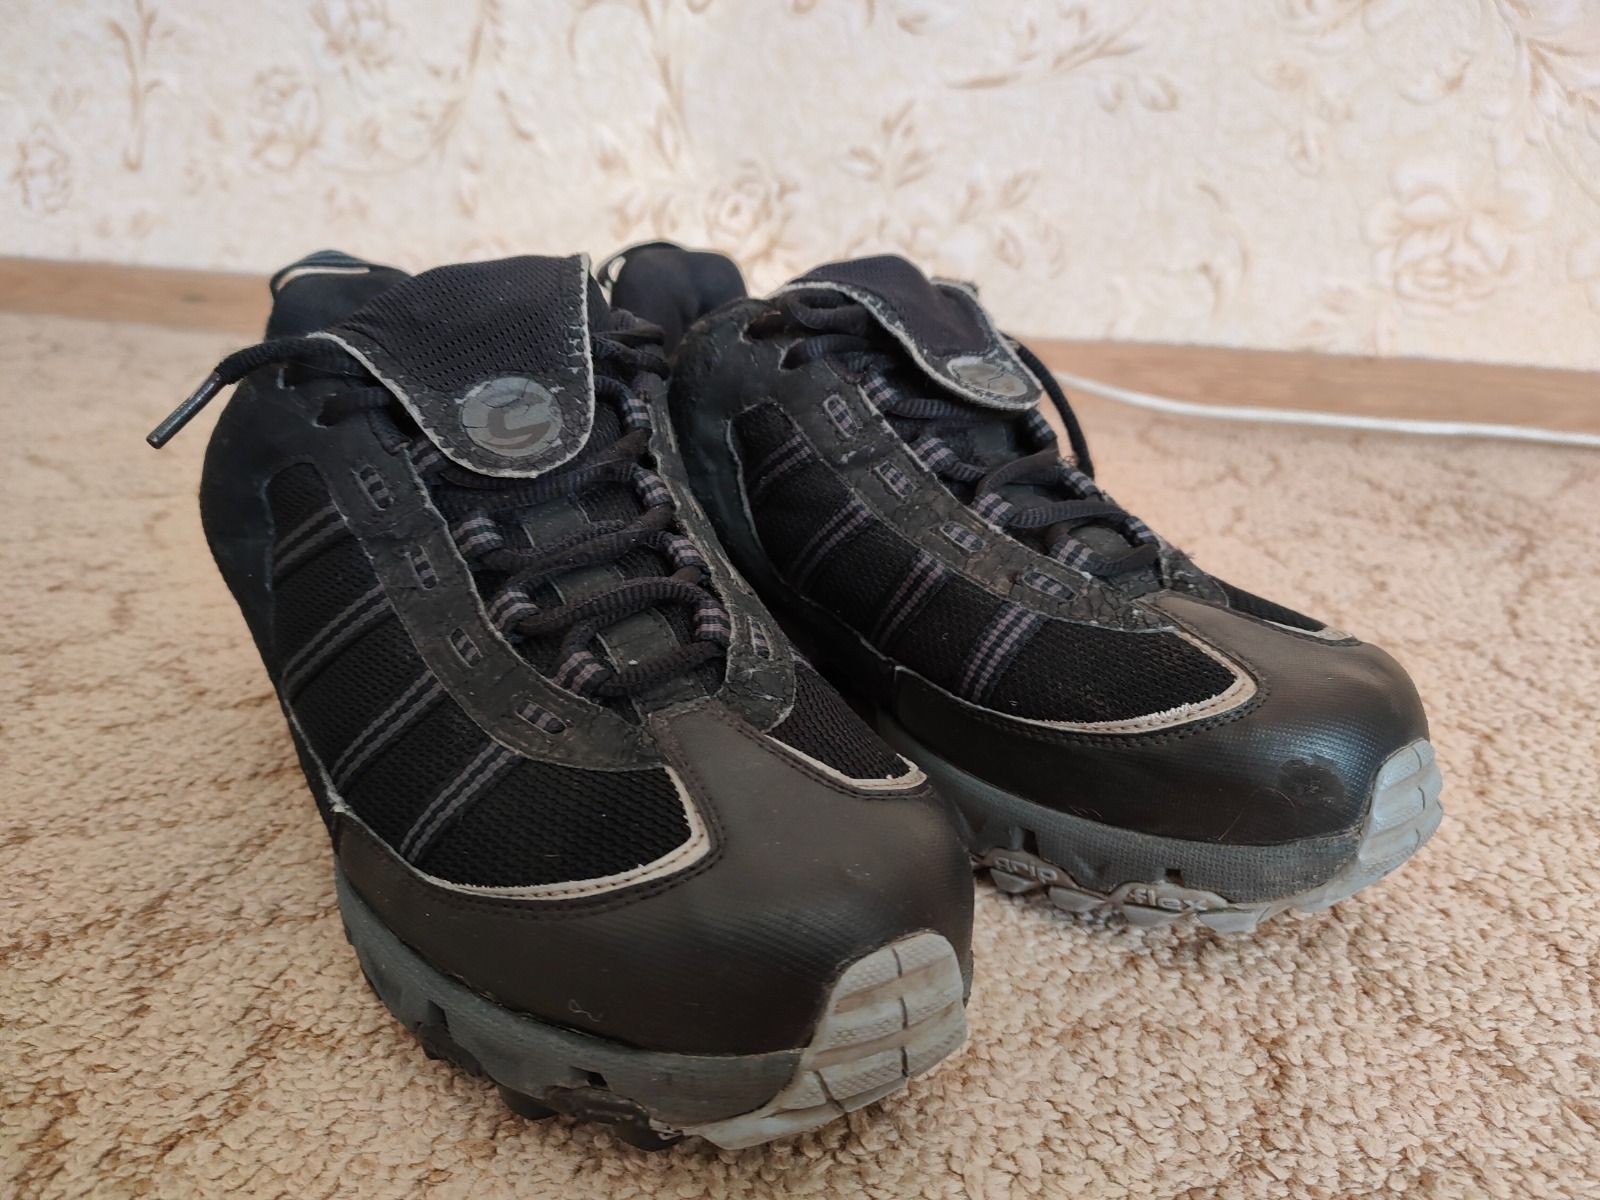 Контактная мтб обувь Cannondale Duratech (р-р~43)